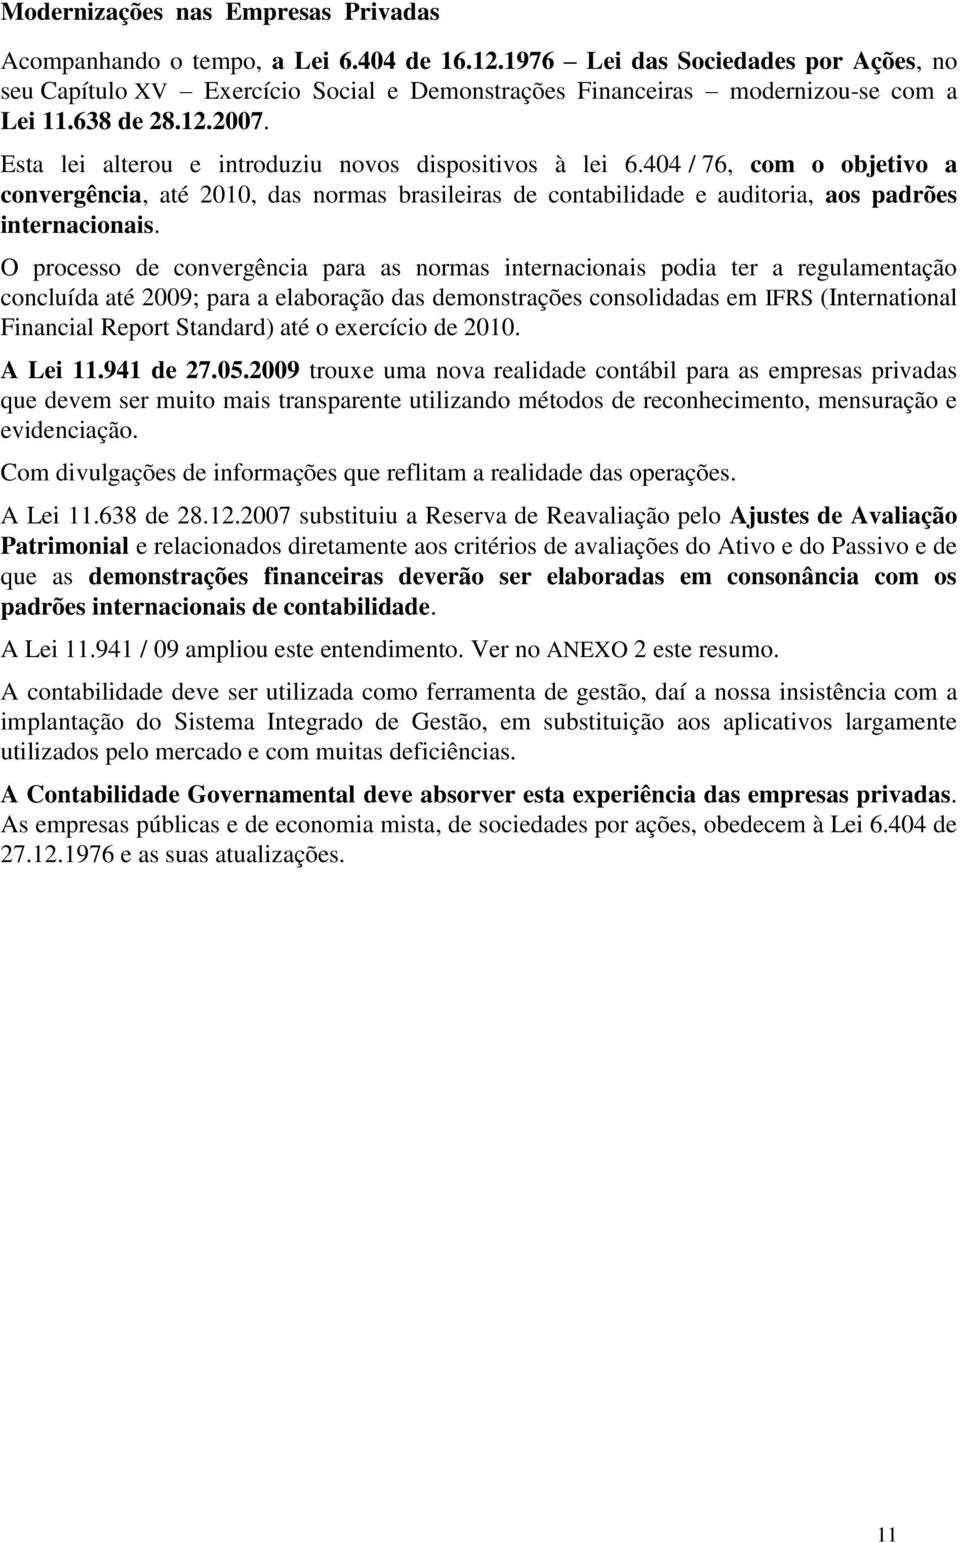 Esta lei alterou e introduziu novos dispositivos à lei 6.404 / 76, com o objetivo a convergência, até 2010, das normas brasileiras de contabilidade e auditoria, aos padrões internacionais.